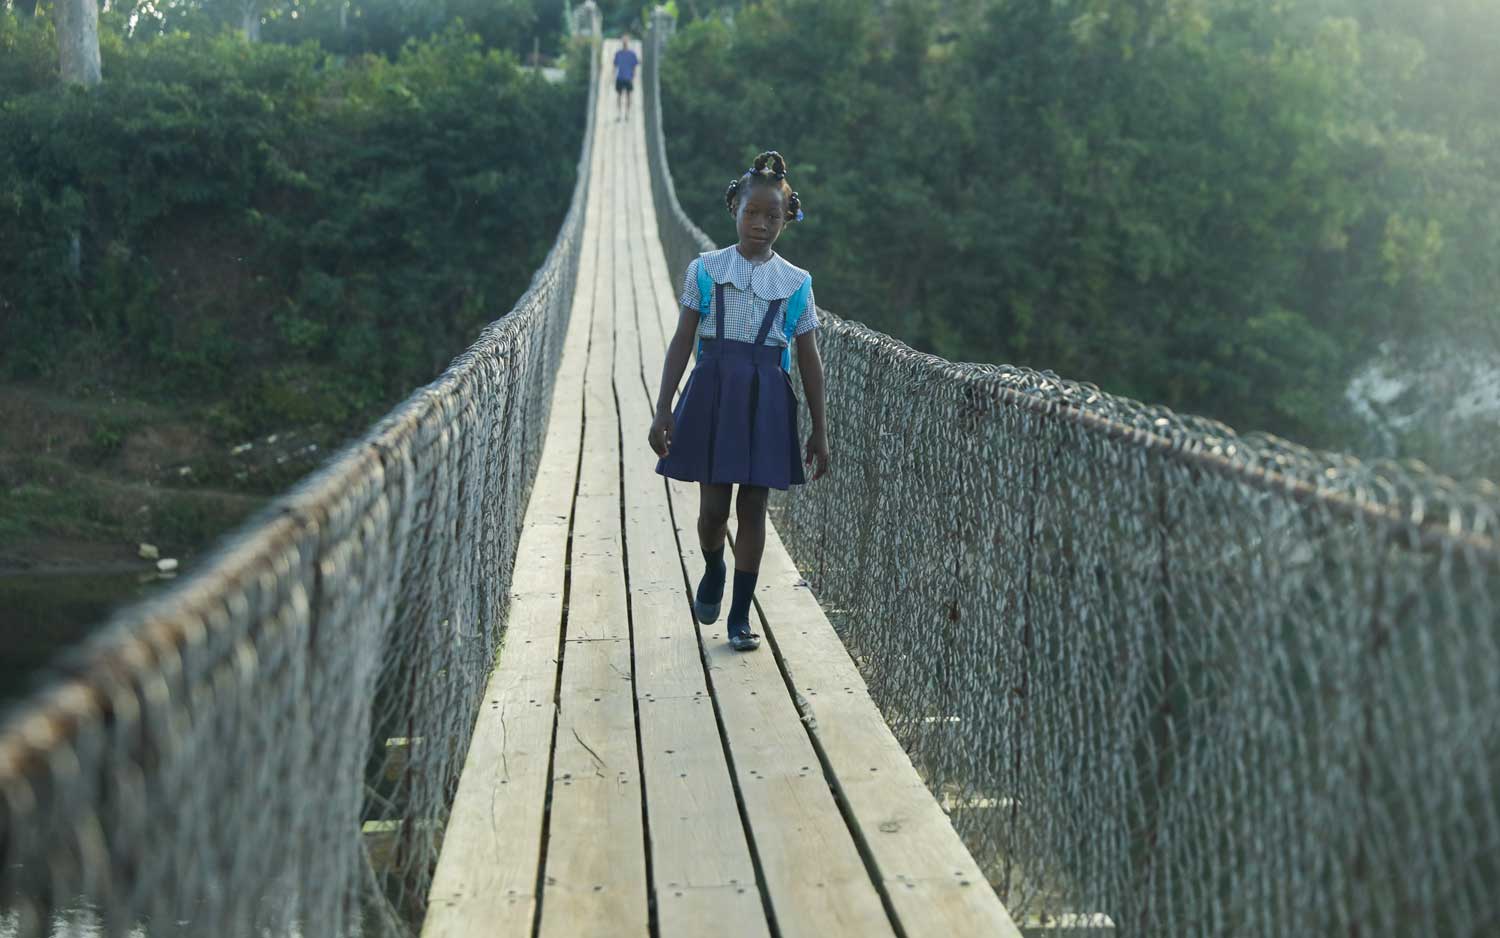 haitian school girl in uniform walking over suspension bridge